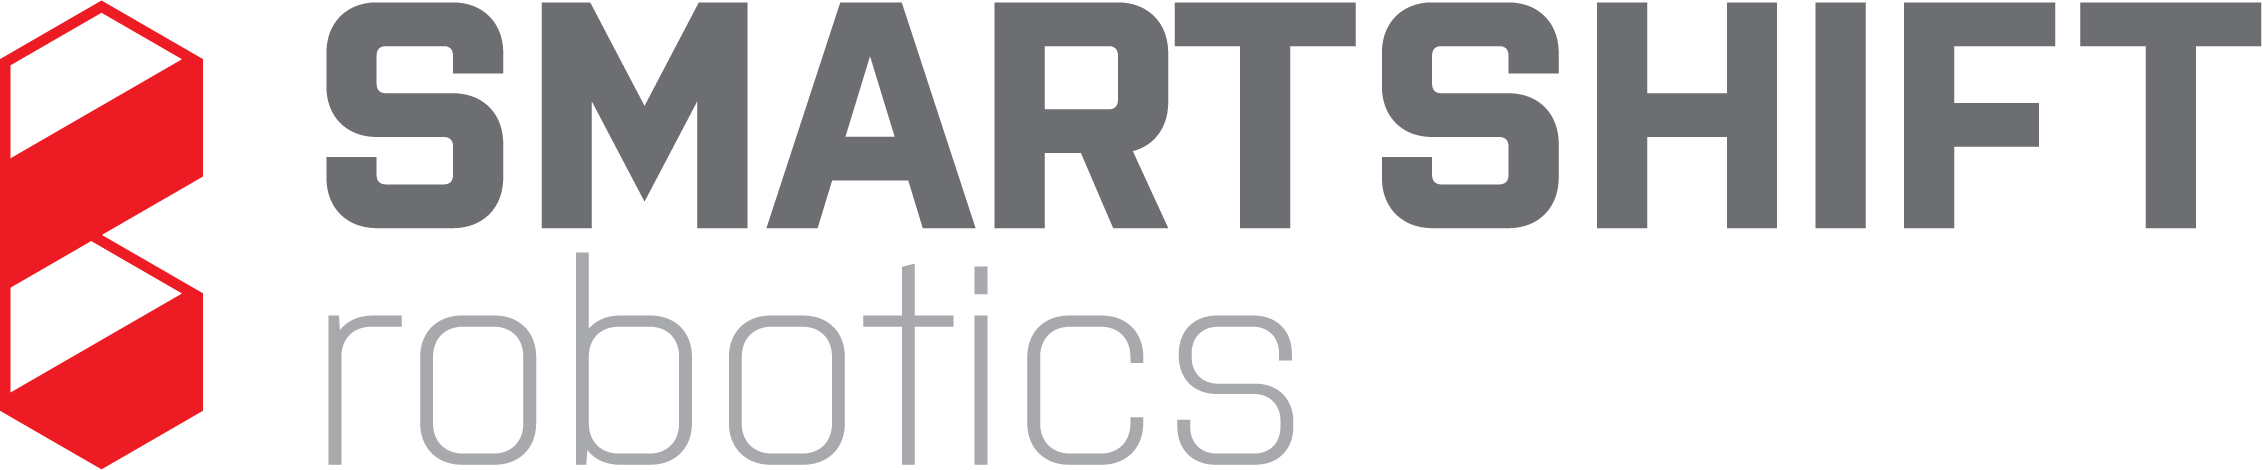 smartshift main logo big